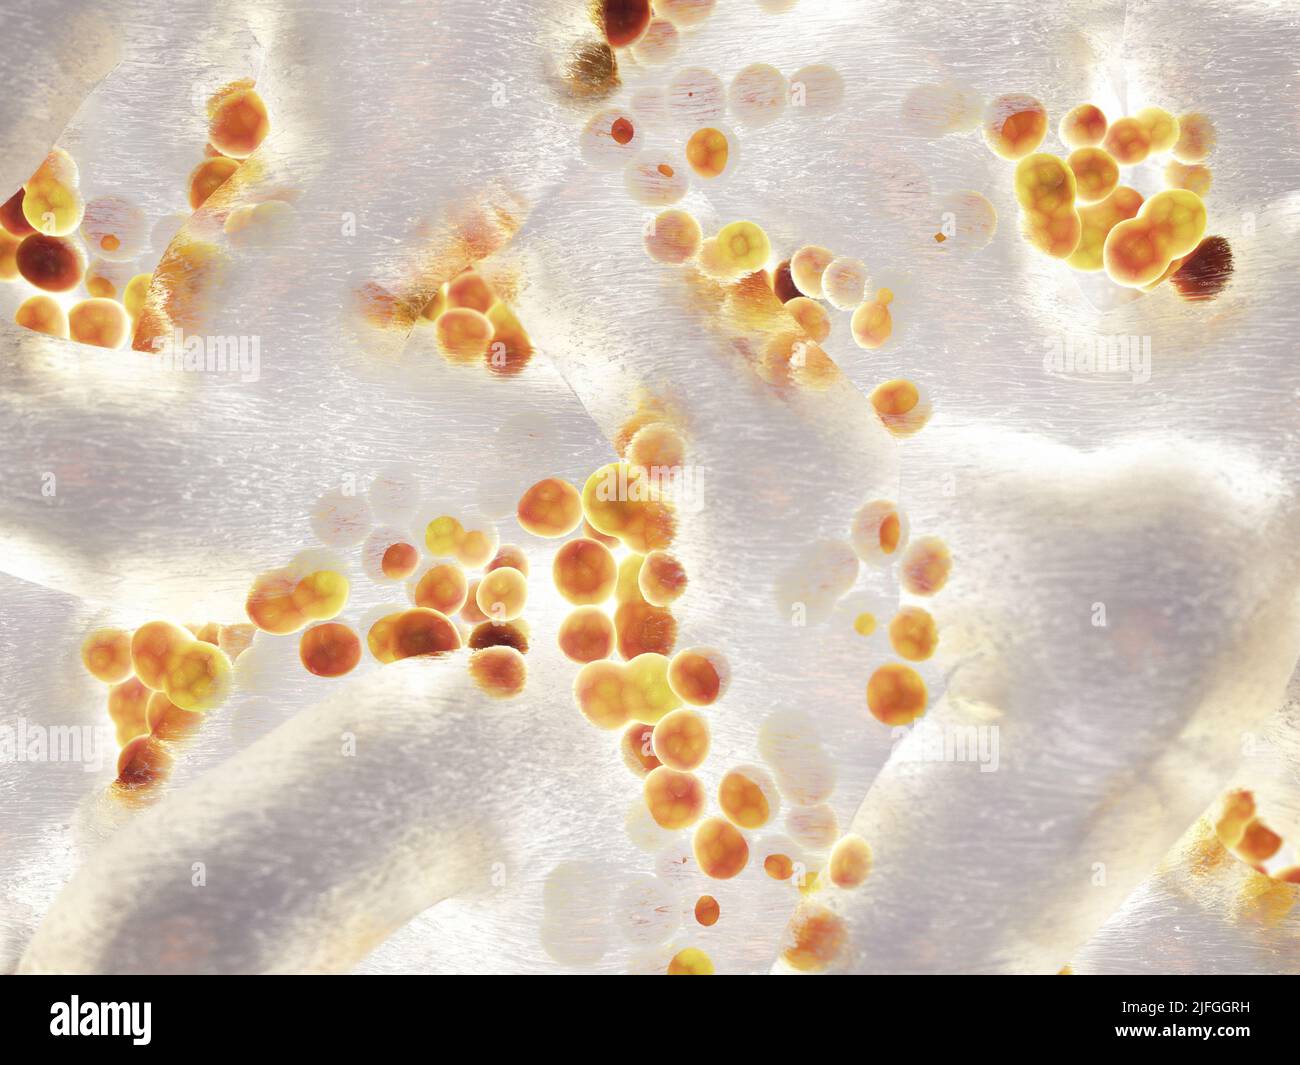 Kolonie von Staphylococcus aureus-Bakterien. Staphylokokken sind die häufigste Ursache von Biofilm-assoziierten Infektionen. Nosokomiale Infektionen Konzept Stockfoto